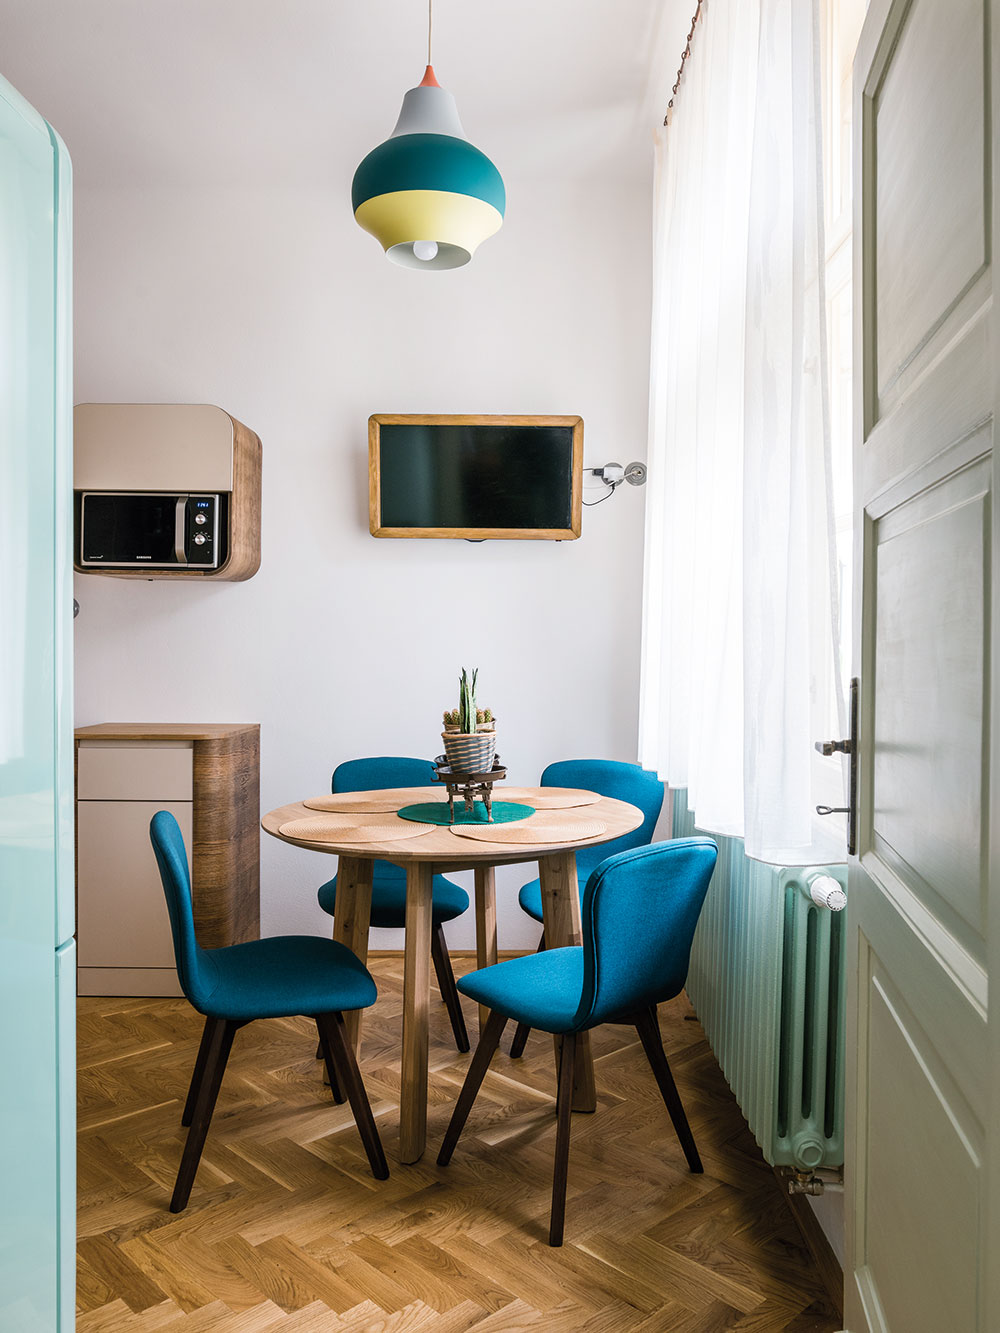 Součástí kuchyně je i sympatický jídelní koutek s modrými pohodlnými židlemi a retro lampou v podobném odstínu. Majitelé však nejraději jedí v prostorném obývacím pokoji. FOTO NORA A JAKUB ČAPRNKOVI